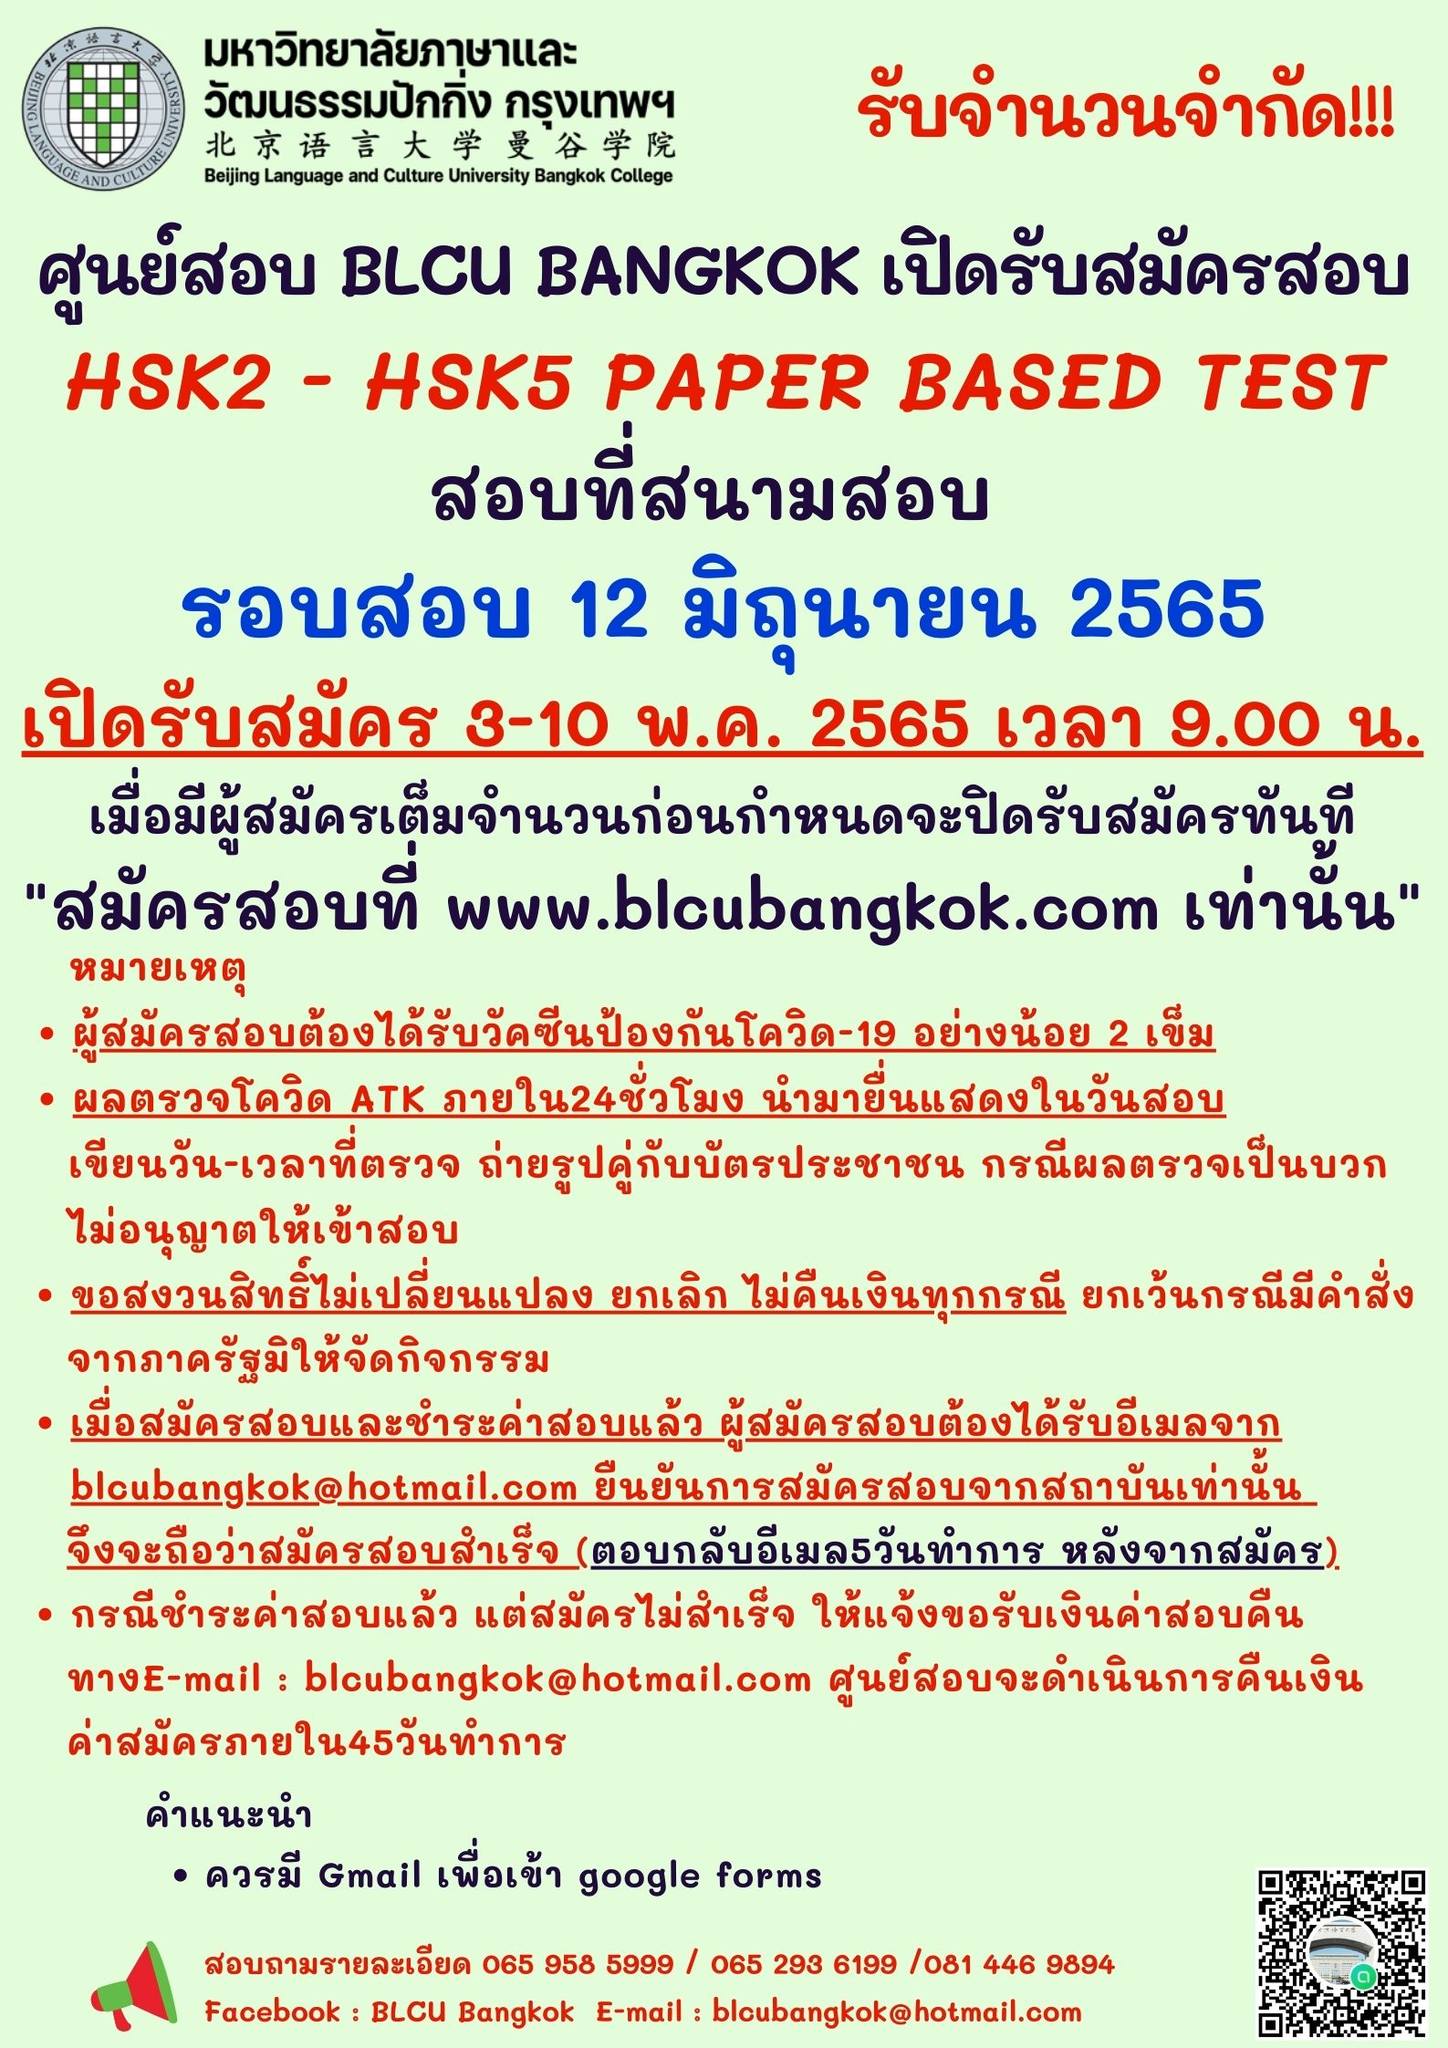 กำหนดวันสอบ HSK ครั้งที่ 4 ประจำปี 2565 วันเสาร์ที่ 14 พฤษภาคม 2565 (Paper based test สอบที่สนามสอบ)